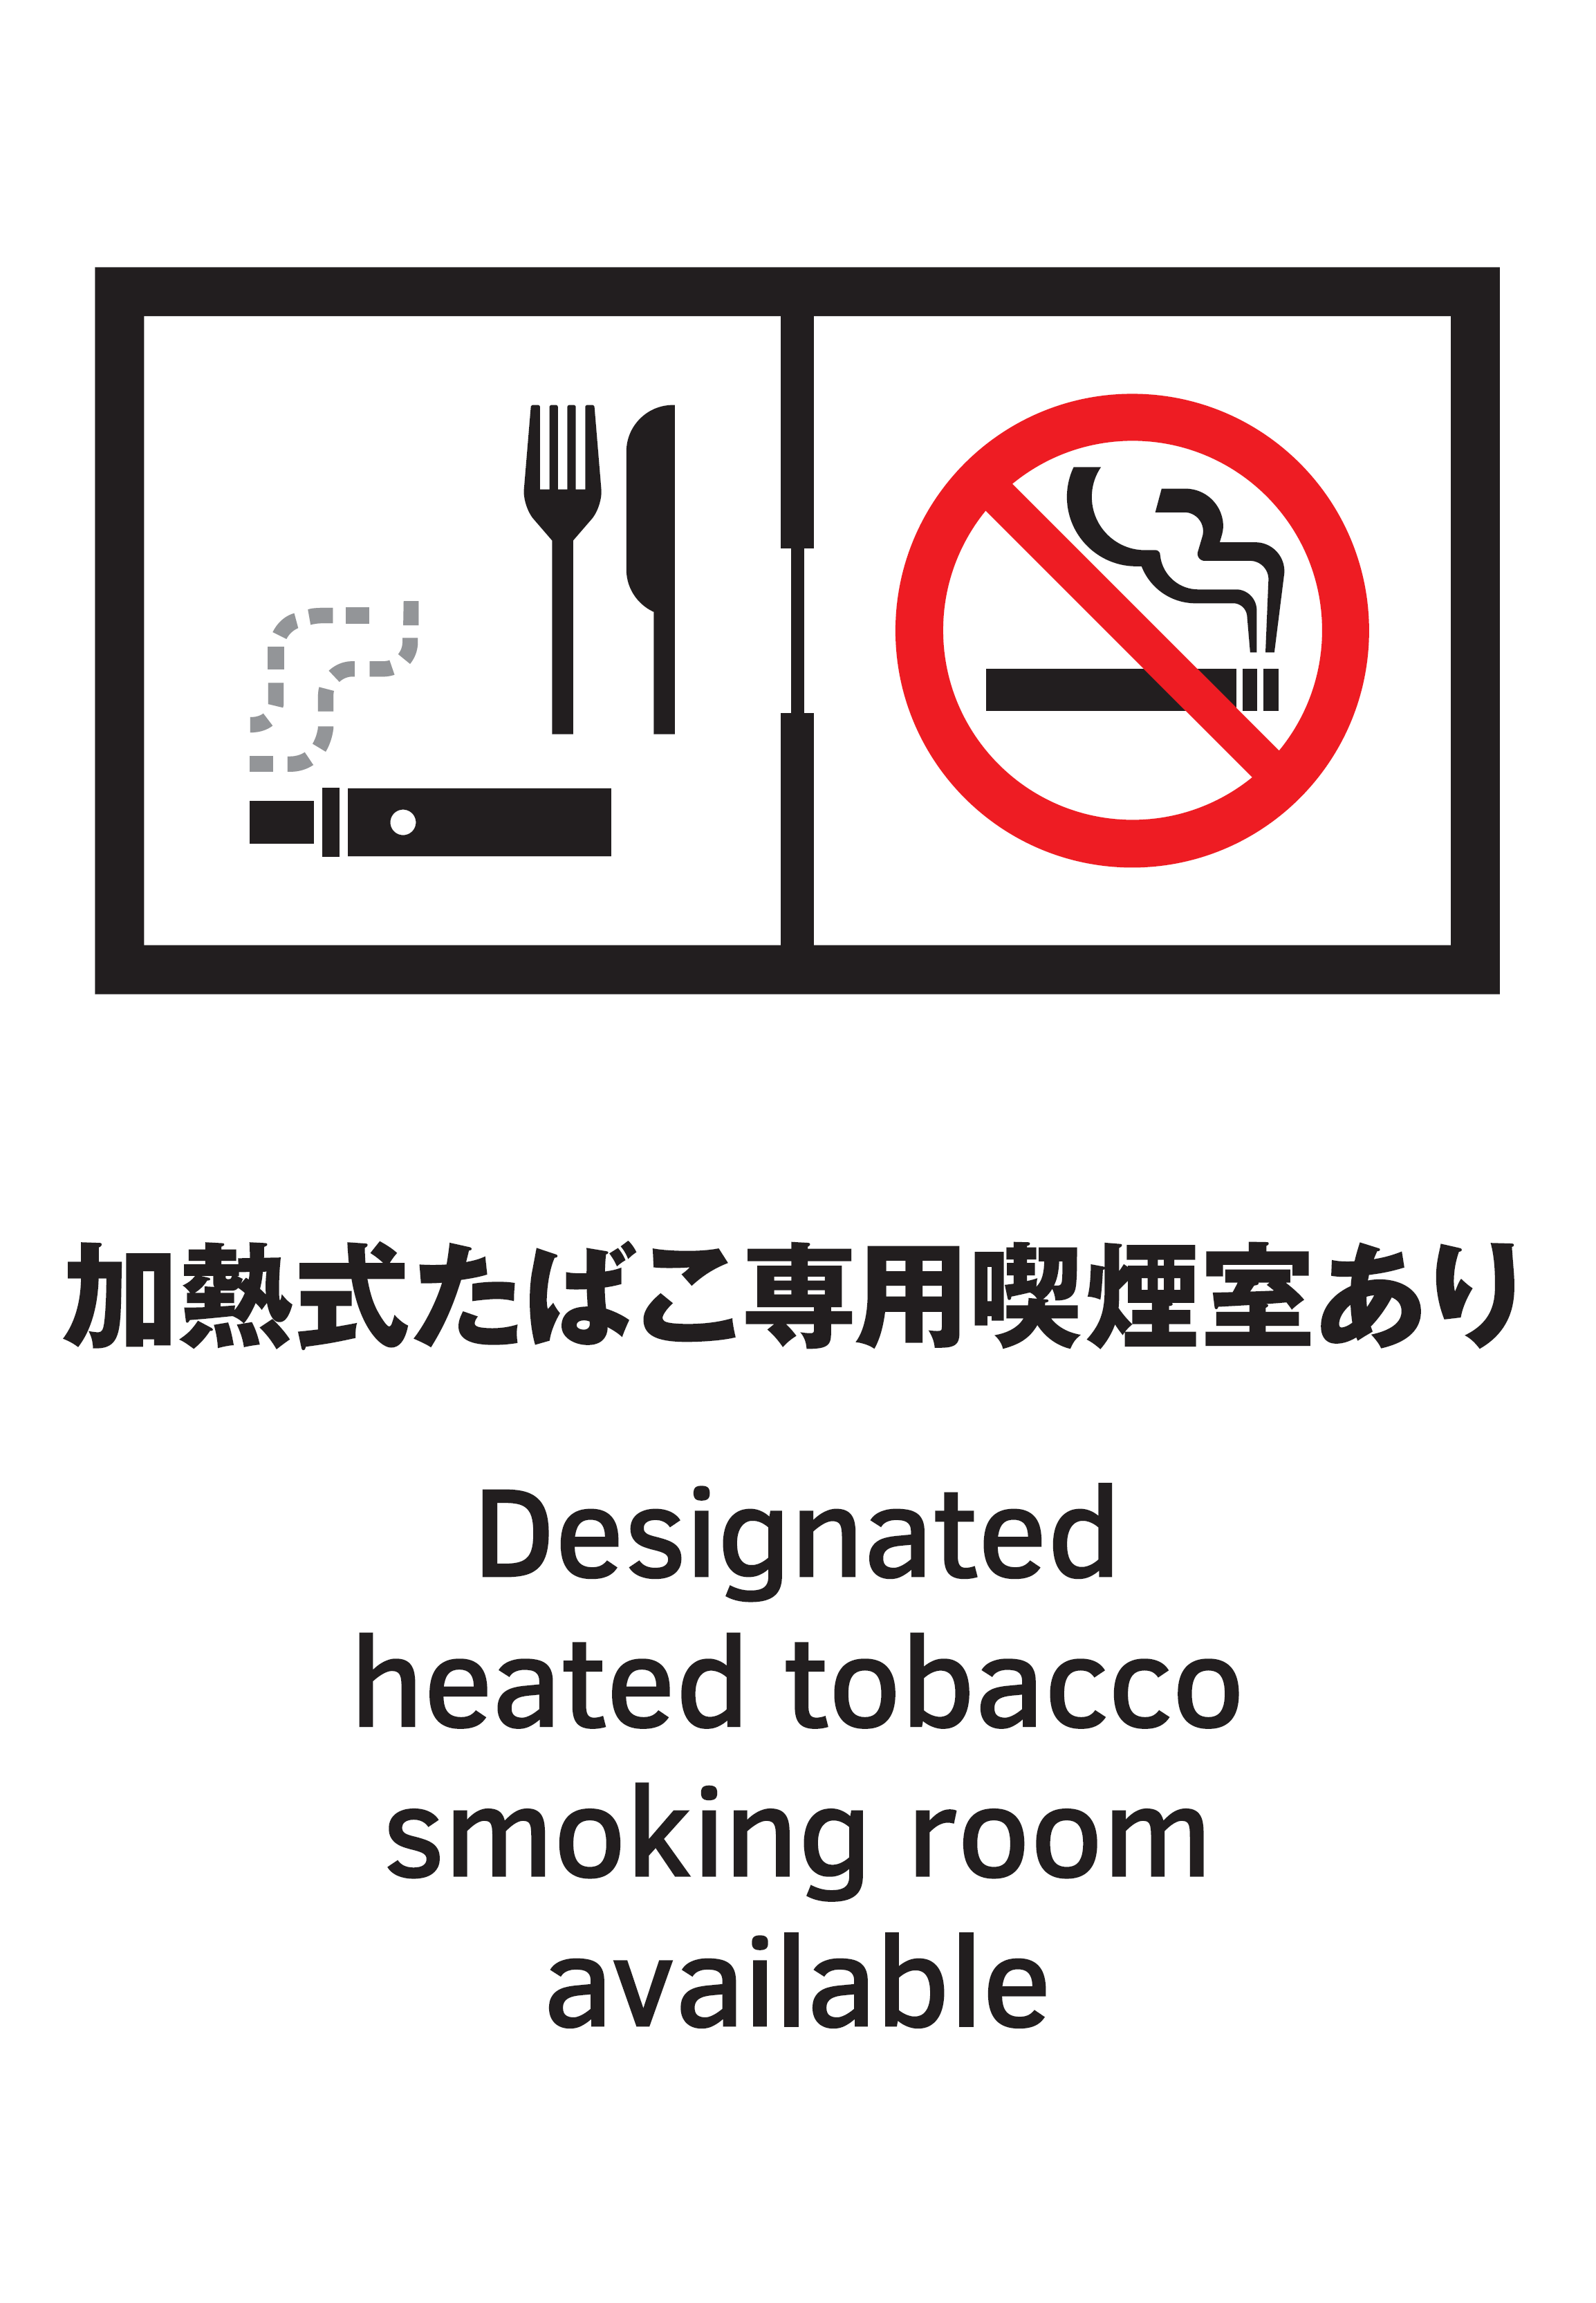 加熱式たばこ専用喫煙室設置施設の標識